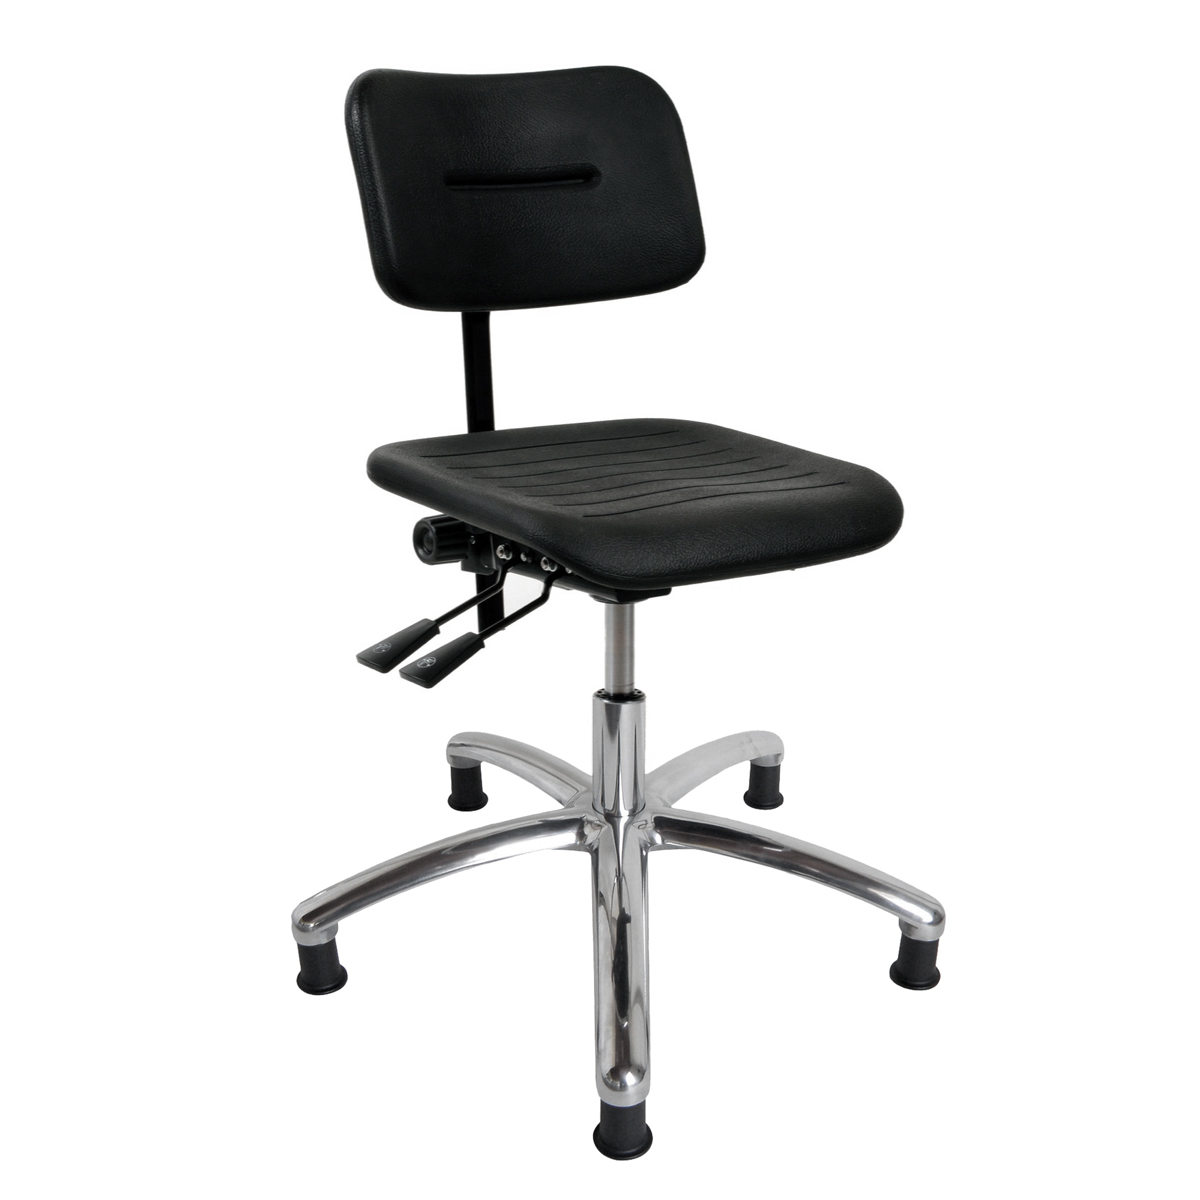 DYNAMO arbetsstol med sits/rygg i PU-skum, glidskor och justering av sits- och rygg (600-860 mm)